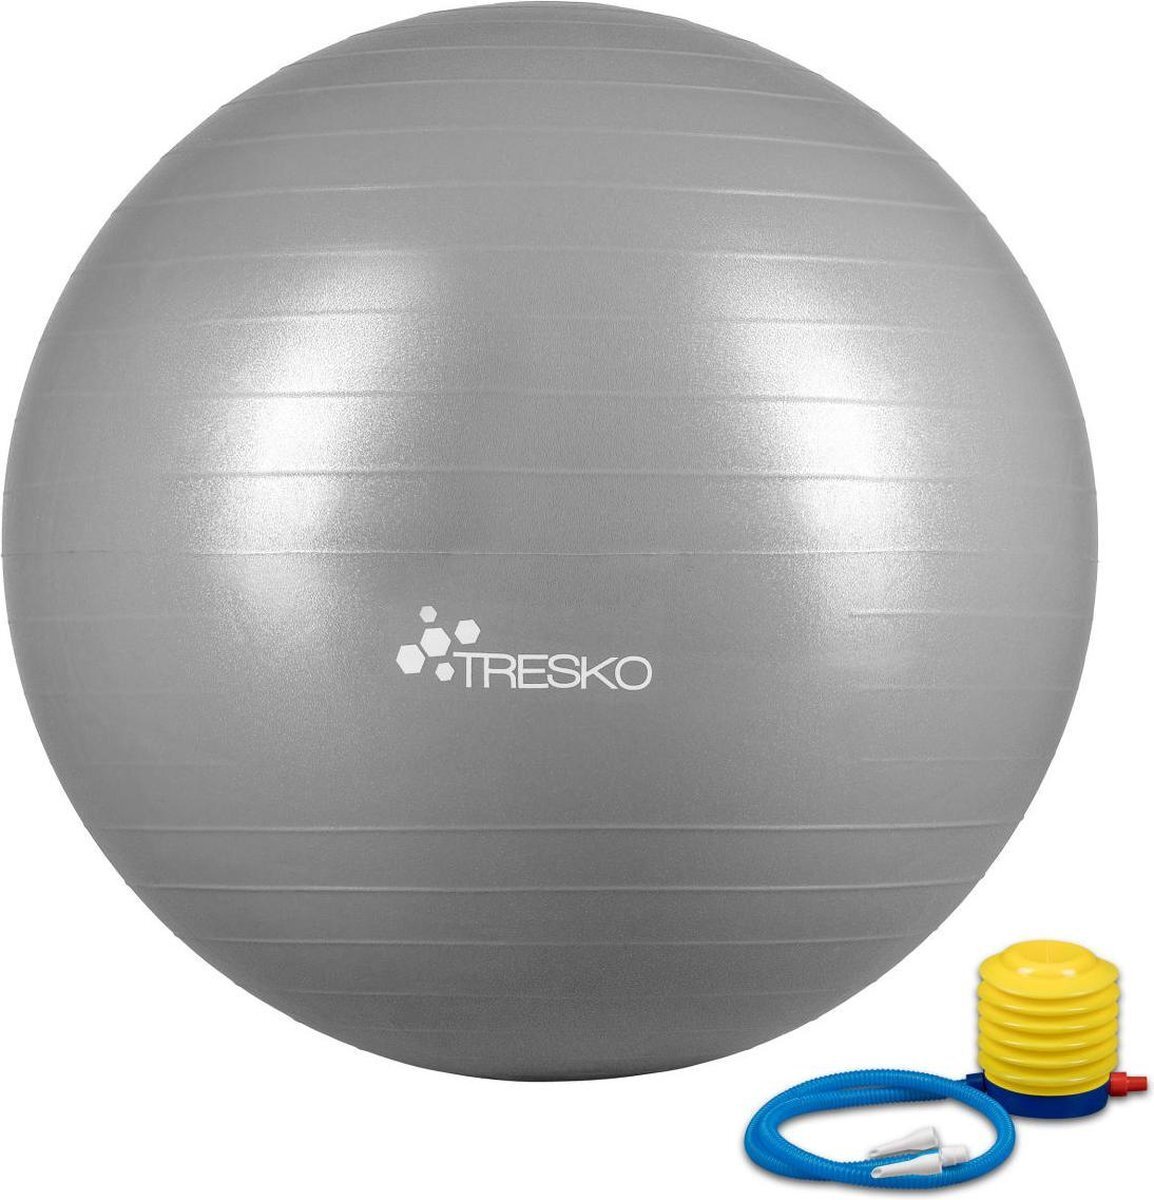 Tresko Fitnessbal met pomp - diameter 65 cm - Grijs